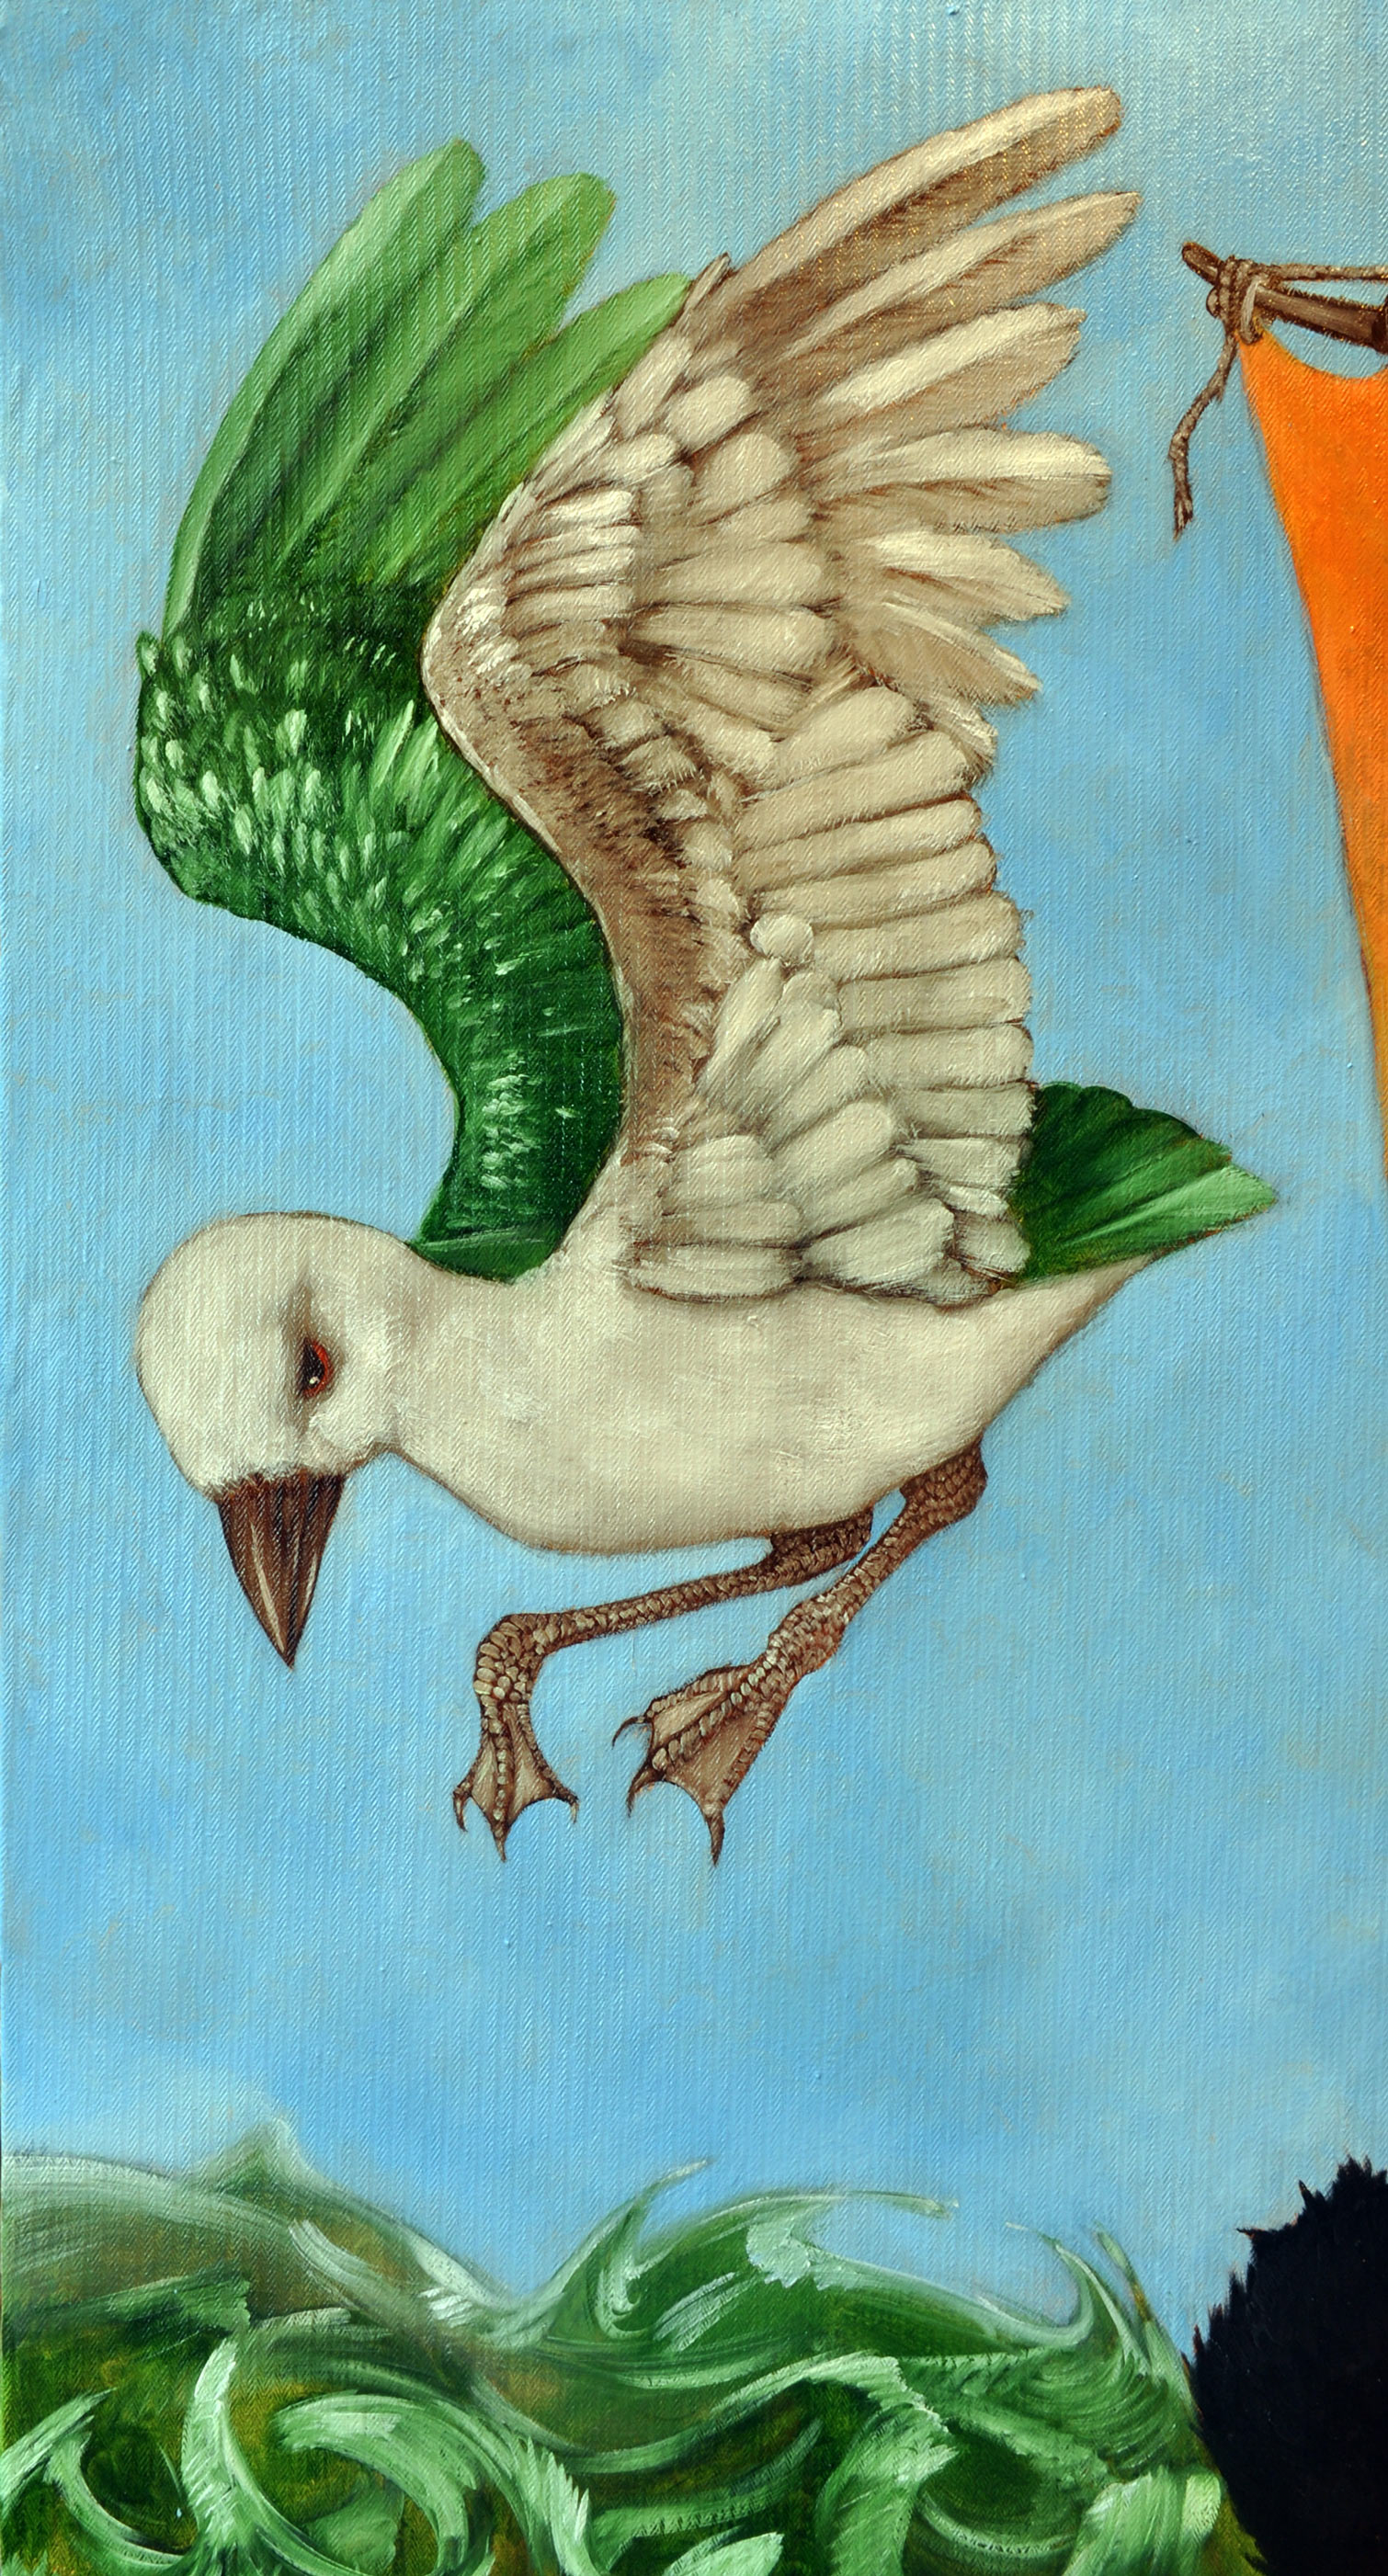 La mouette dans le ciel. Seuls le dos de ses ailes est vert, le reste est blanc, fait de touches grasses.